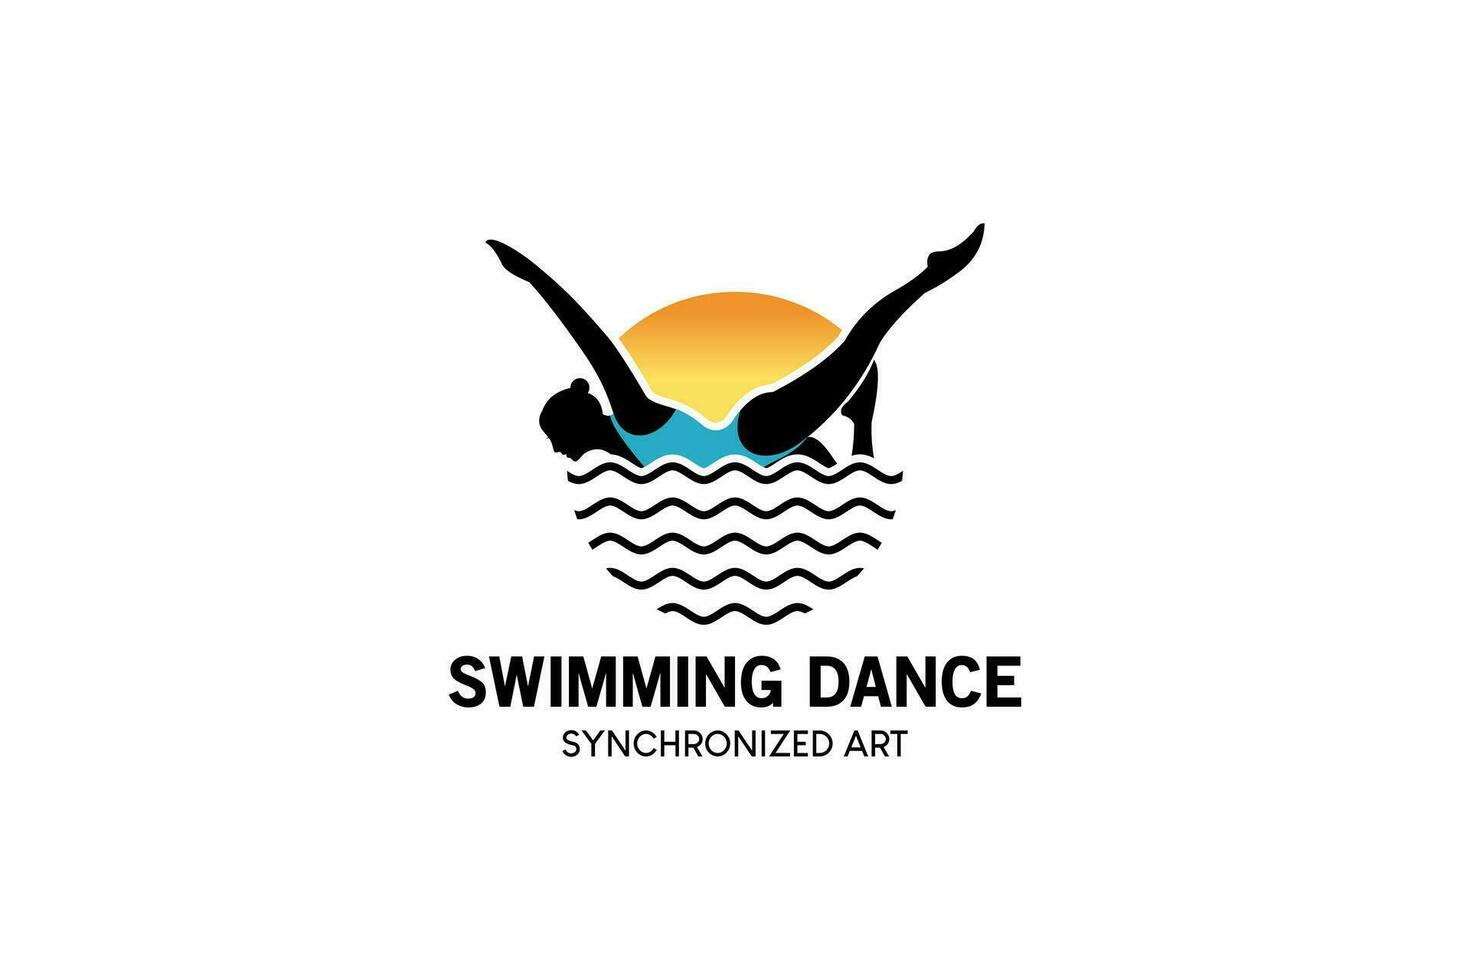 sync danza nuoto sport logo disegno, donna silhouette nuoto danza su acqua onde vettore